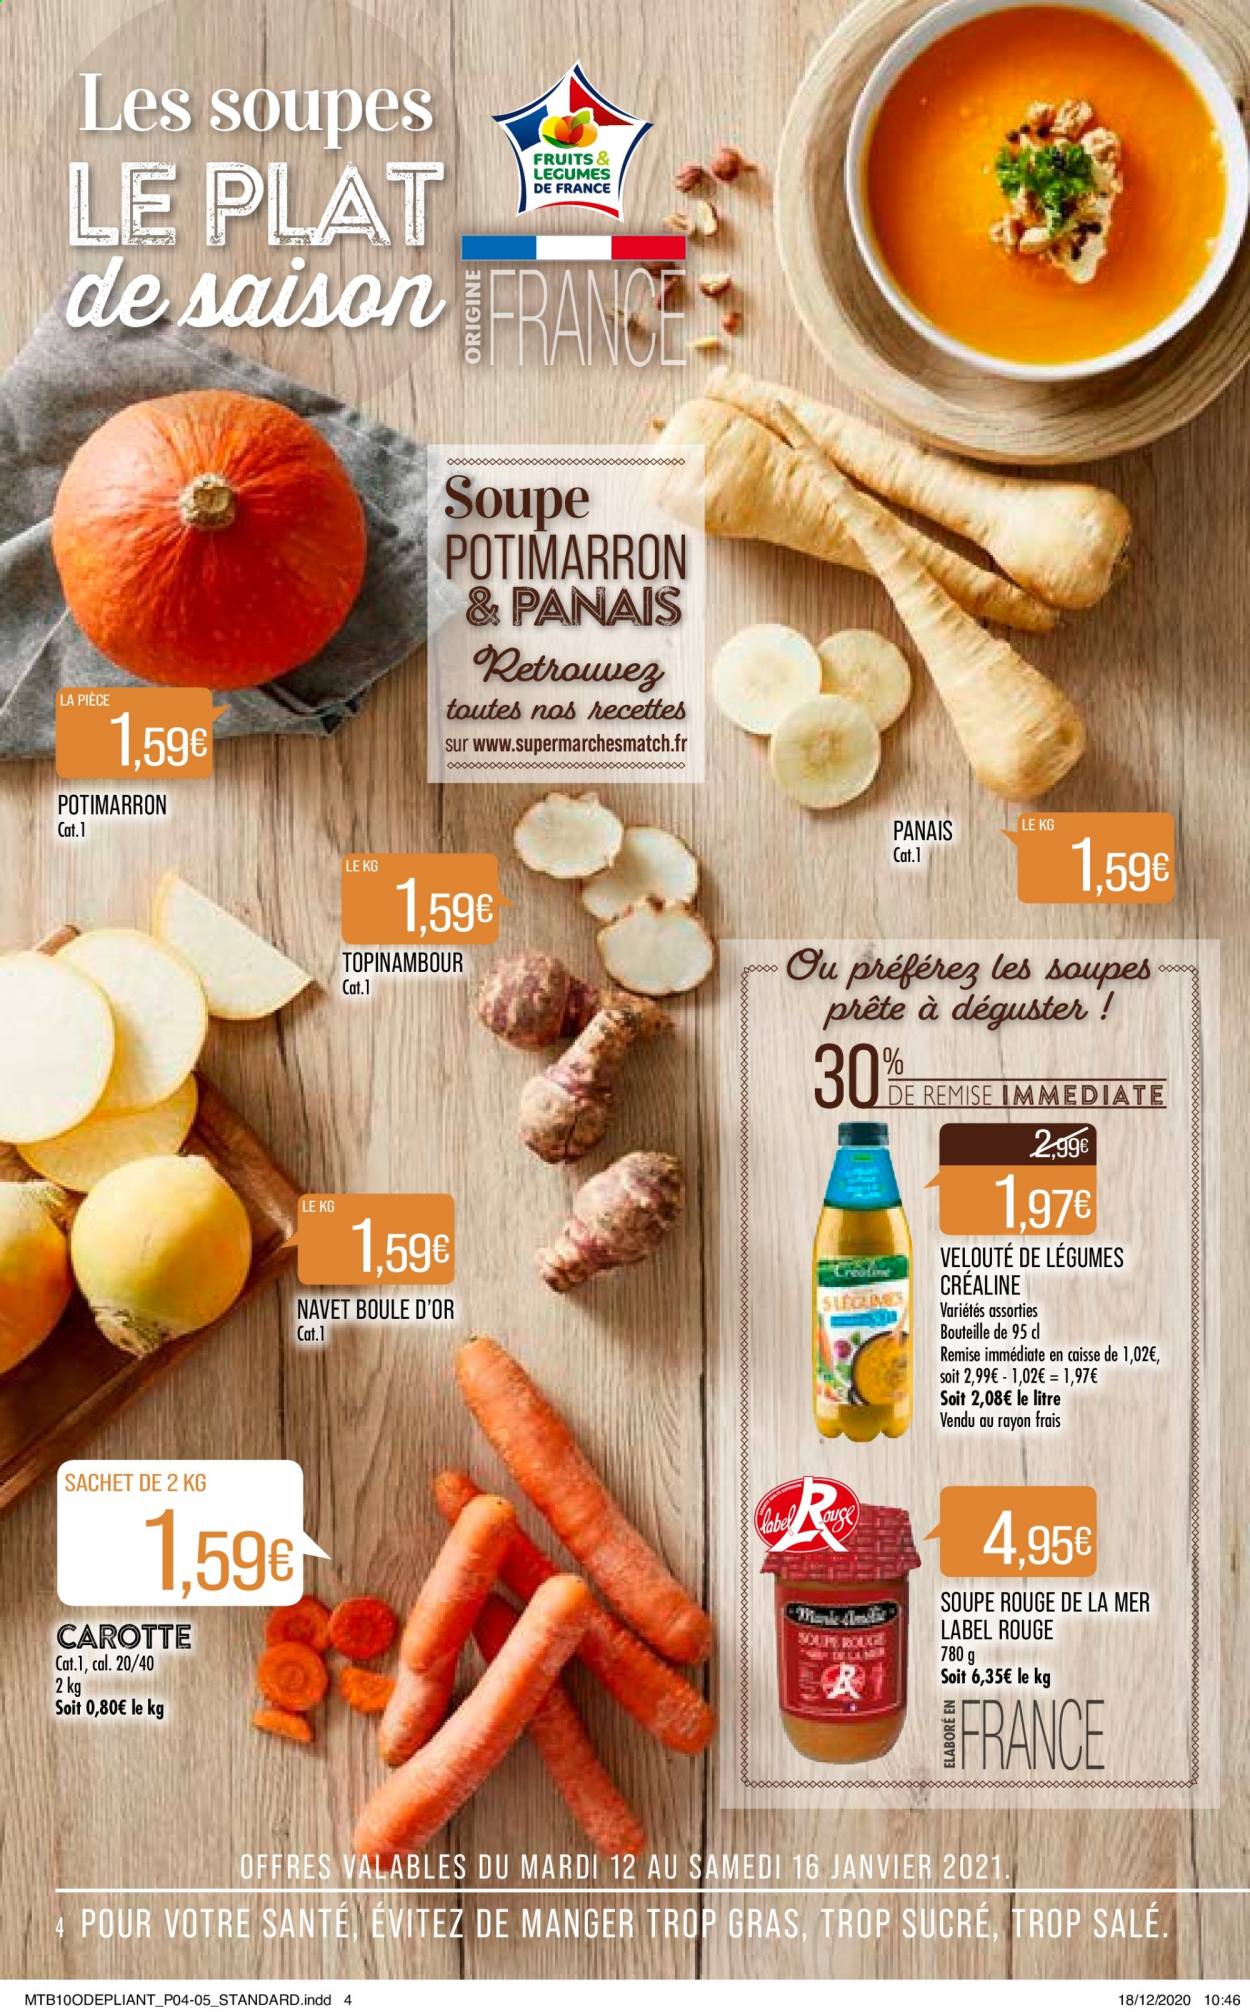 thumbnail - Catalogue Supermarché Match - 12/01/2021 - 24/01/2021 - Produits soldés - carotte, potimarron, navet, panais, soupe, velouté. Page 4.